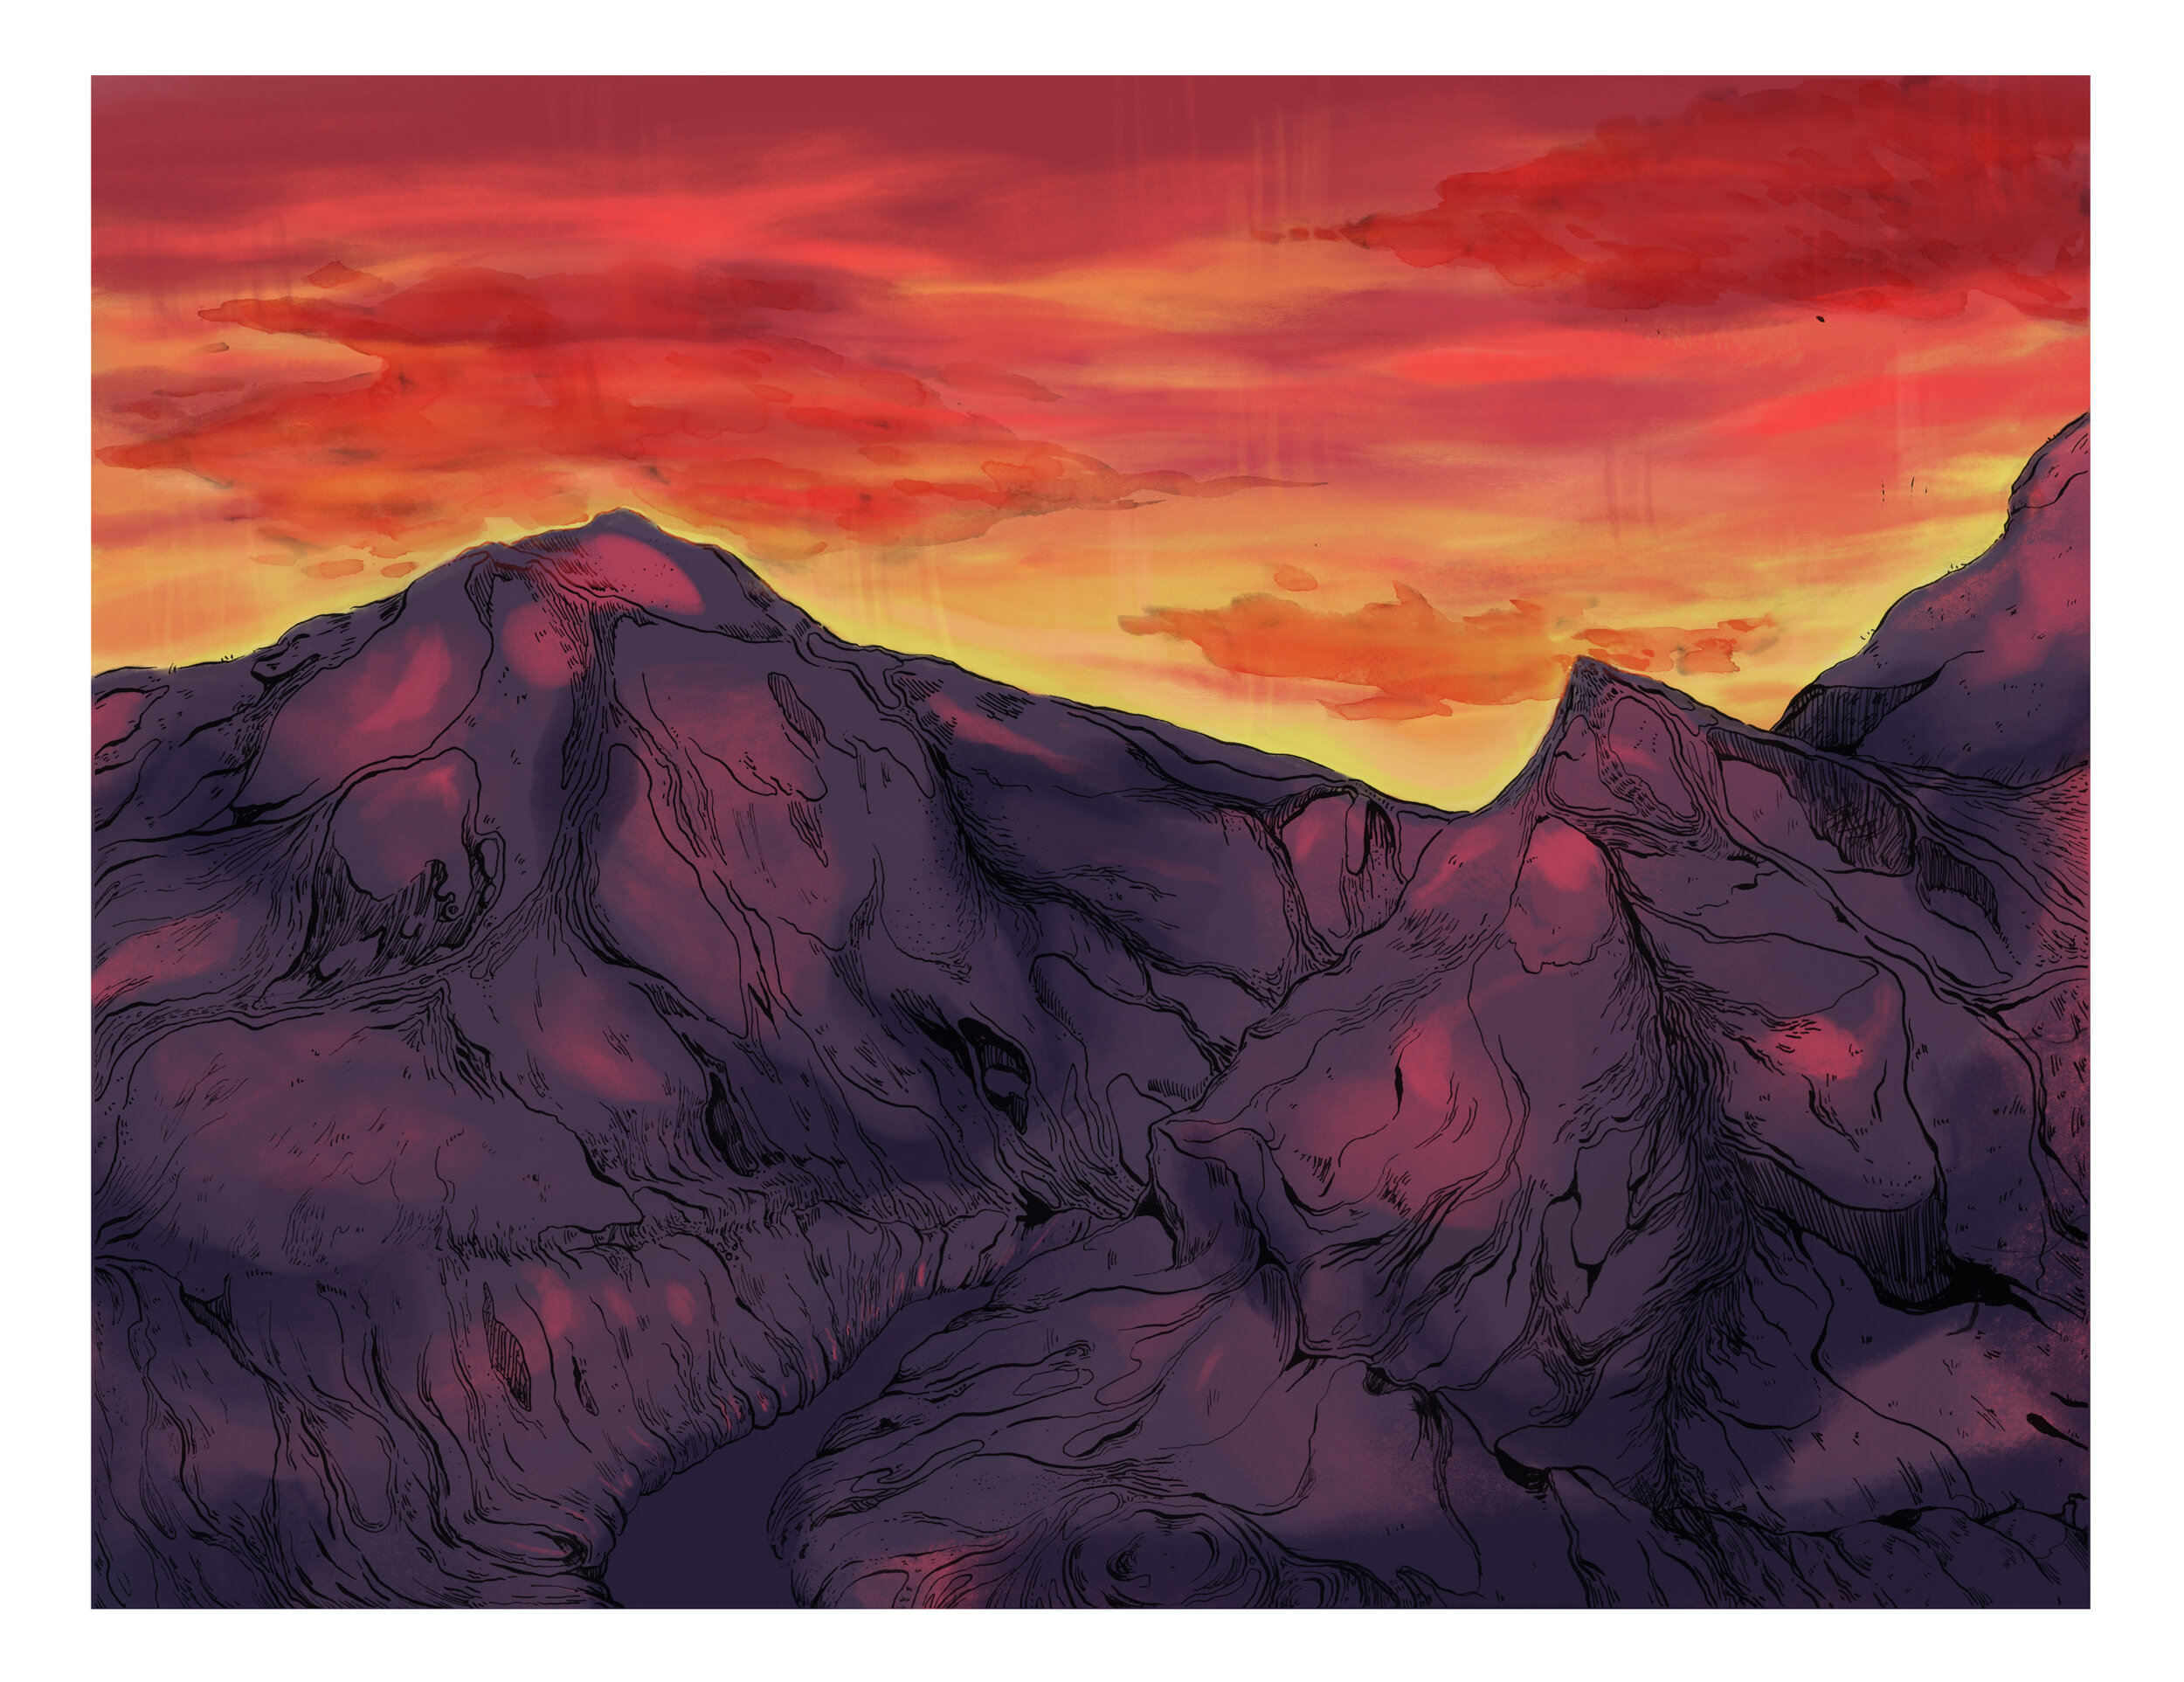 background: sierra nevada mountains